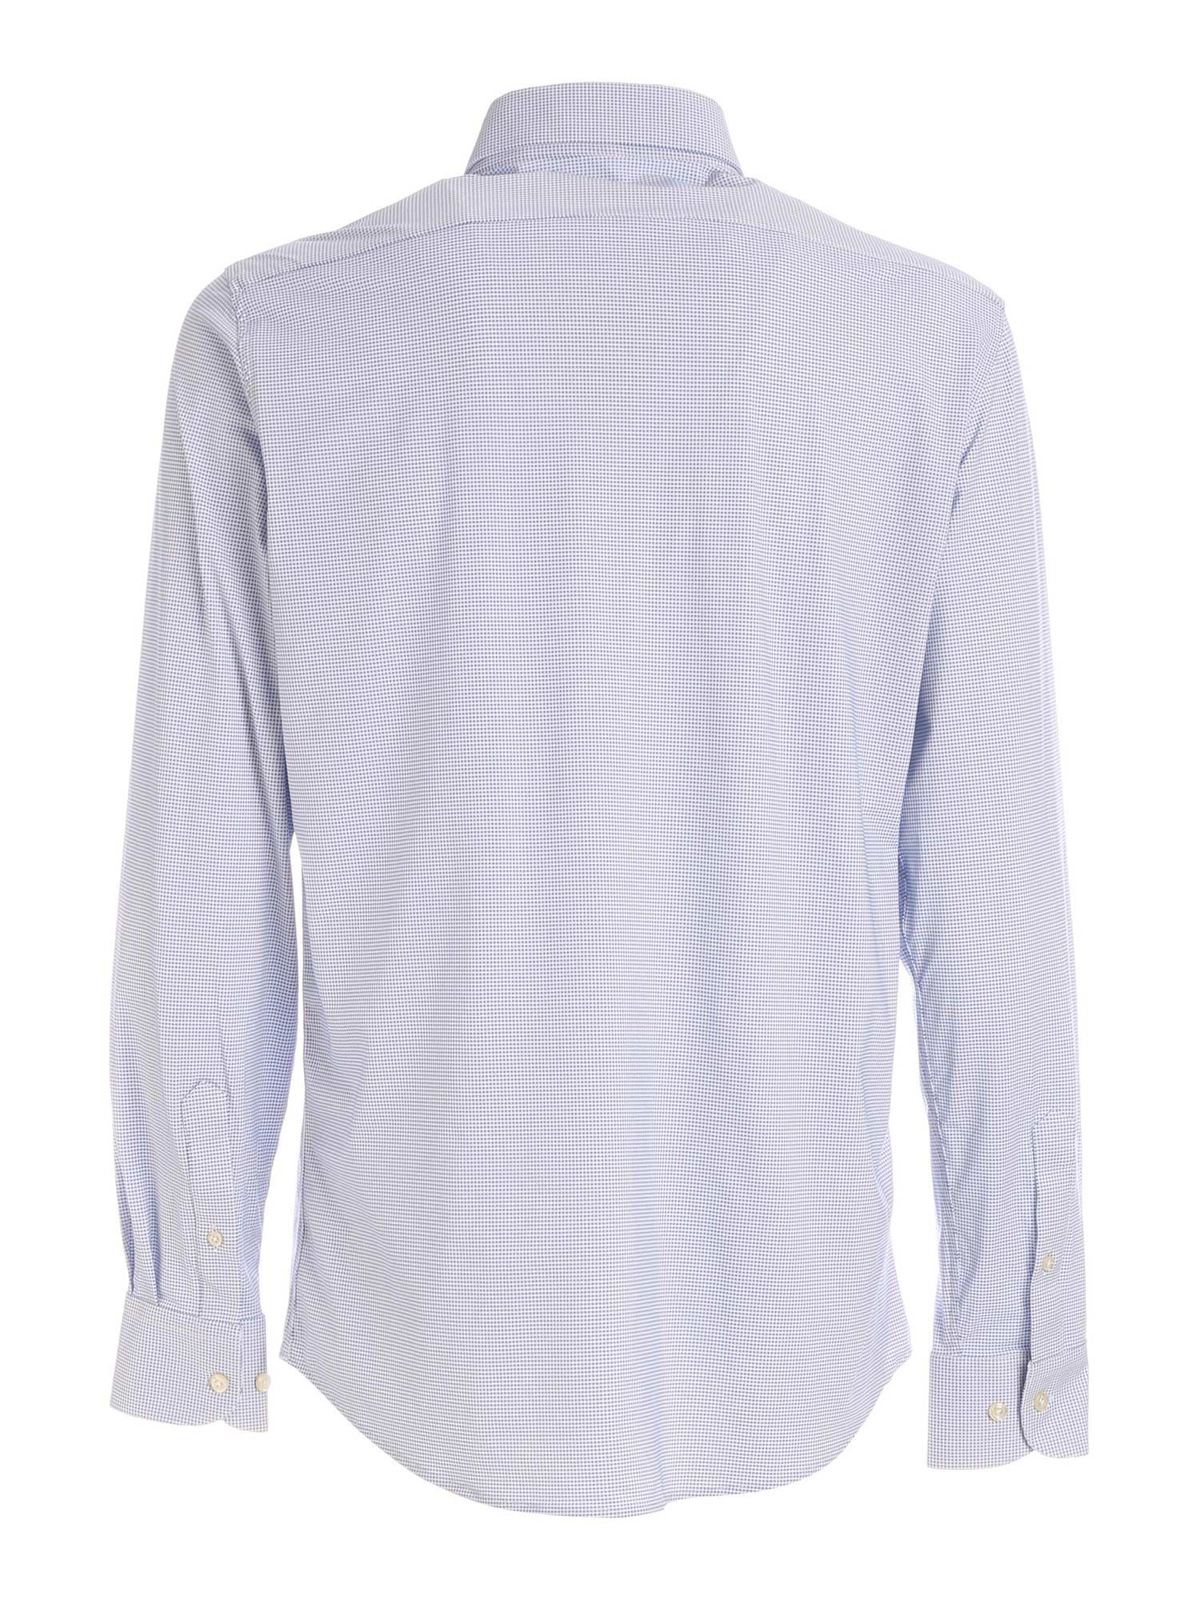 Shirts RRD Roberto Ricci Designs - Micro pattern shirt in light blue ...